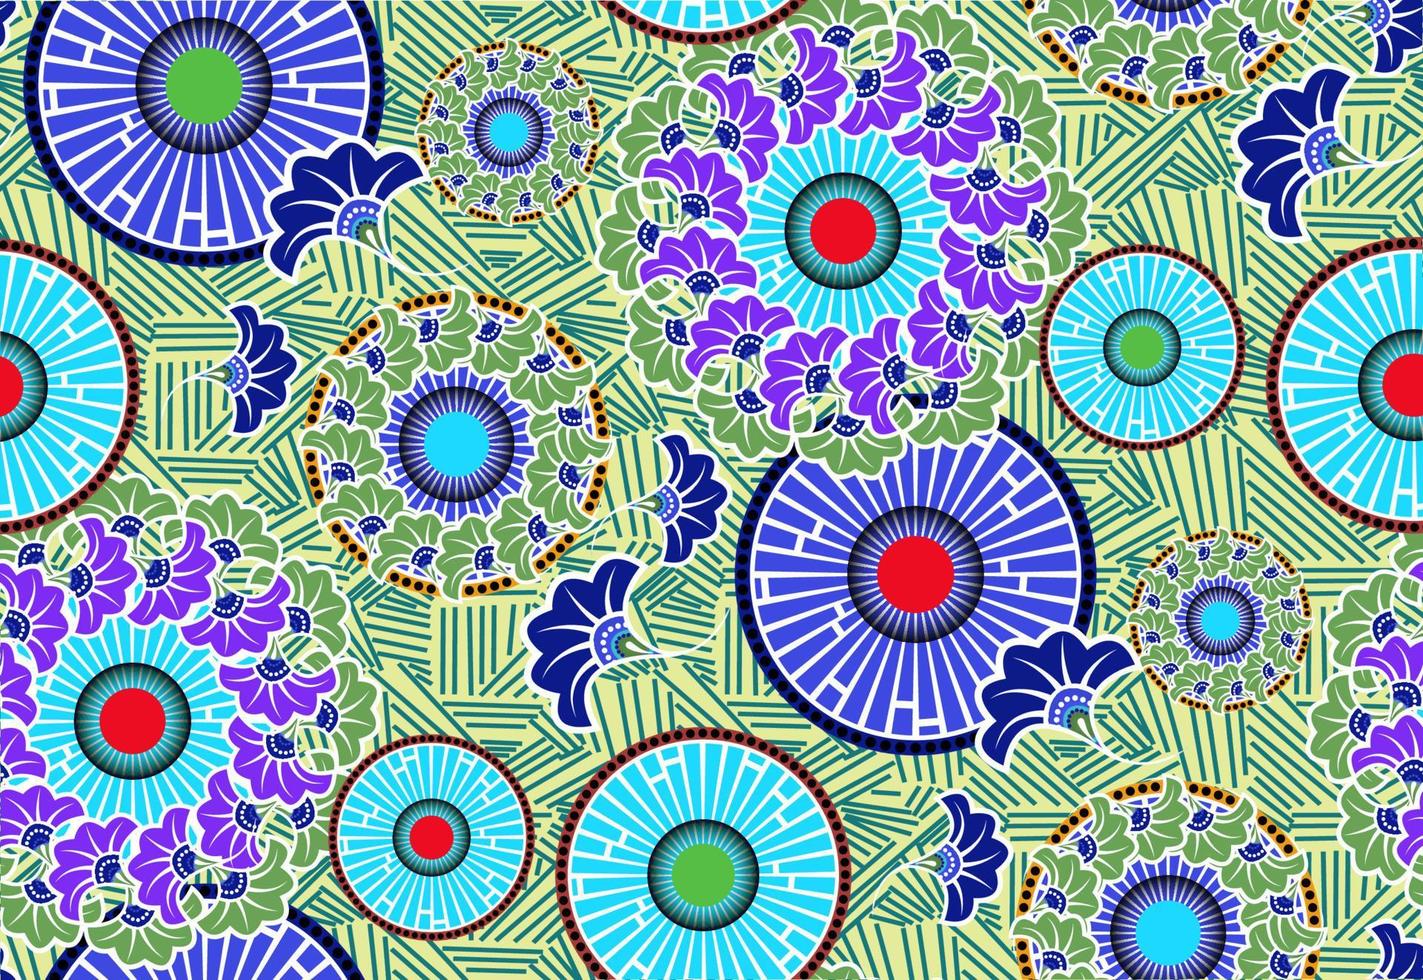 Primavera sem costura japonesa padrão com motivo floral clássico, textura asiática para impressão em embalagens, têxteis, papel, tecido, fabricação, papéis de parede. fundo colorido vetor